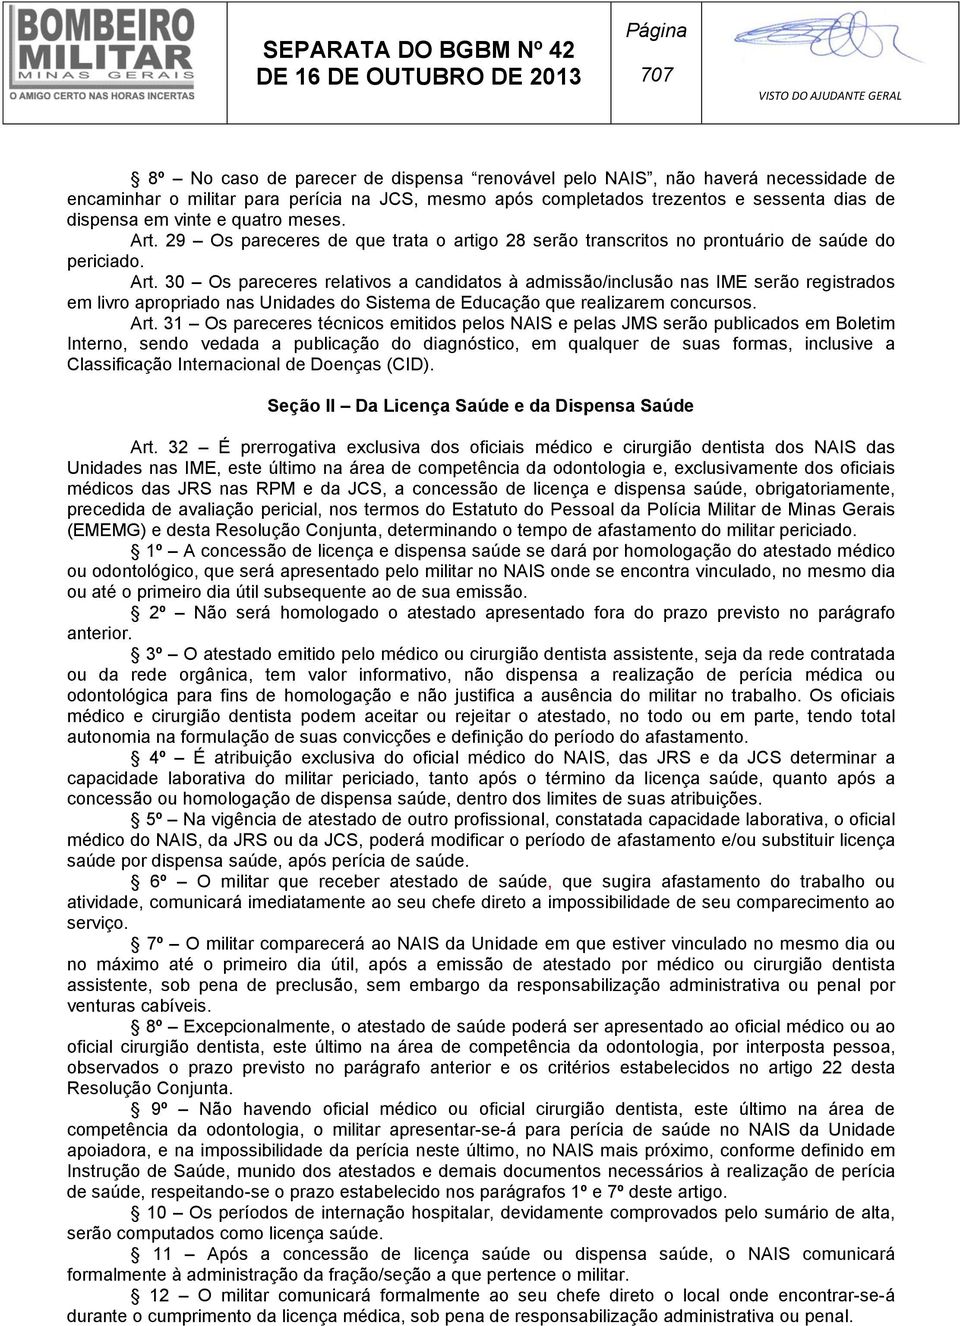 Art. 31 Os pareceres técnicos emitidos pelos NAIS e pelas JMS serão publicados em Boletim Interno, sendo vedada a publicação do diagnóstico, em qualquer de suas formas, inclusive a Classificação